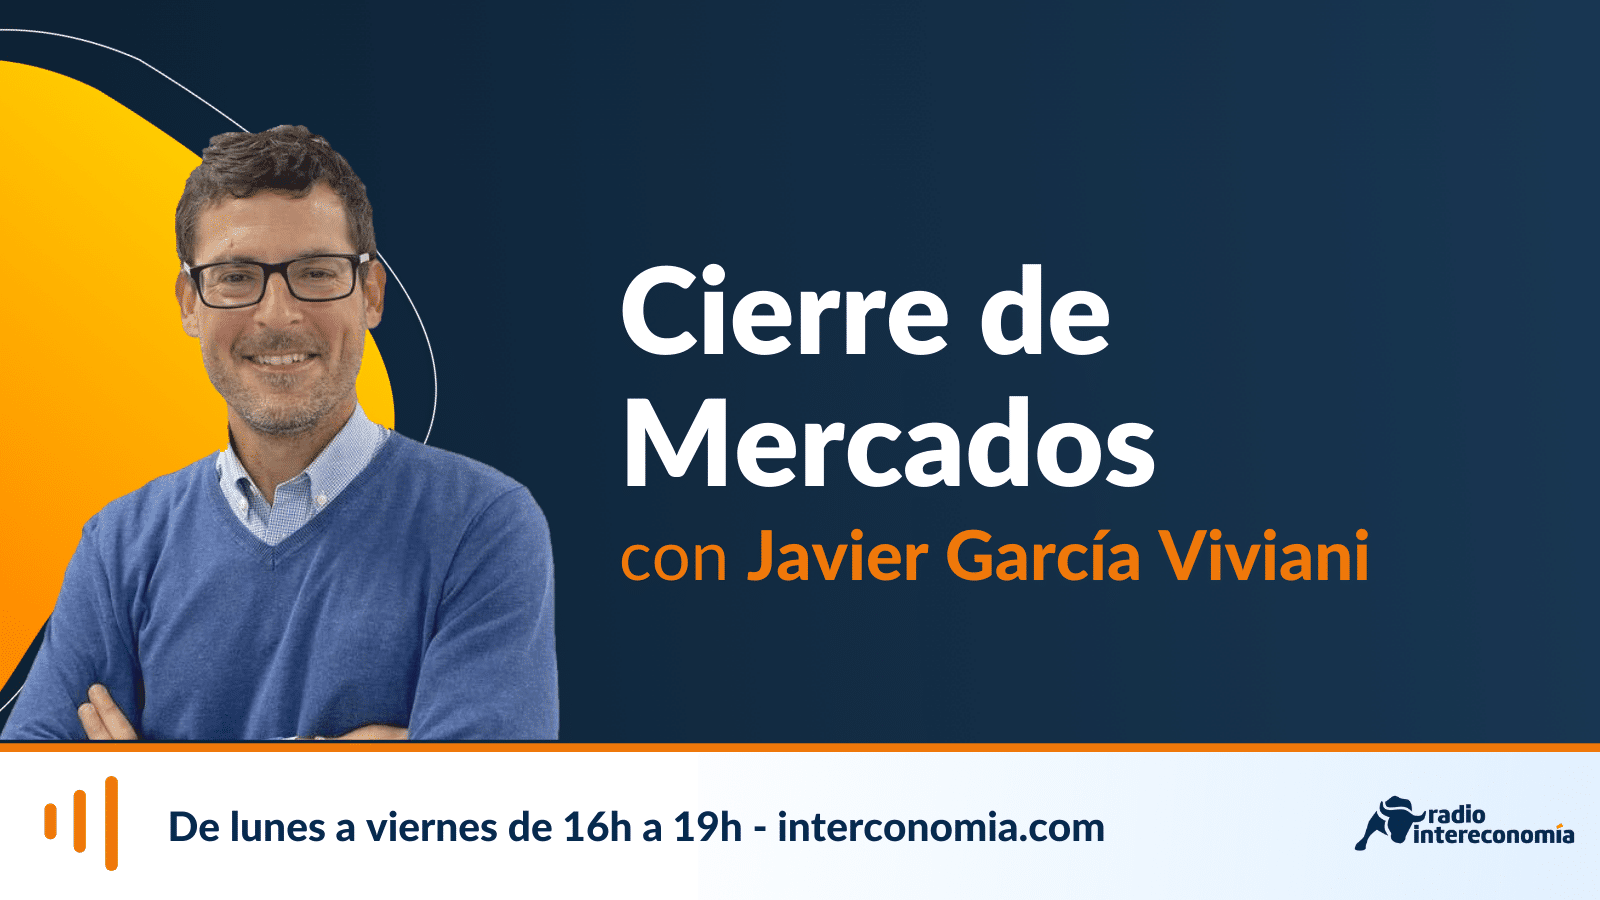 Cierre de Mercados, 17-18h: Análisis con Juan Gómez Bada 06/07/2022